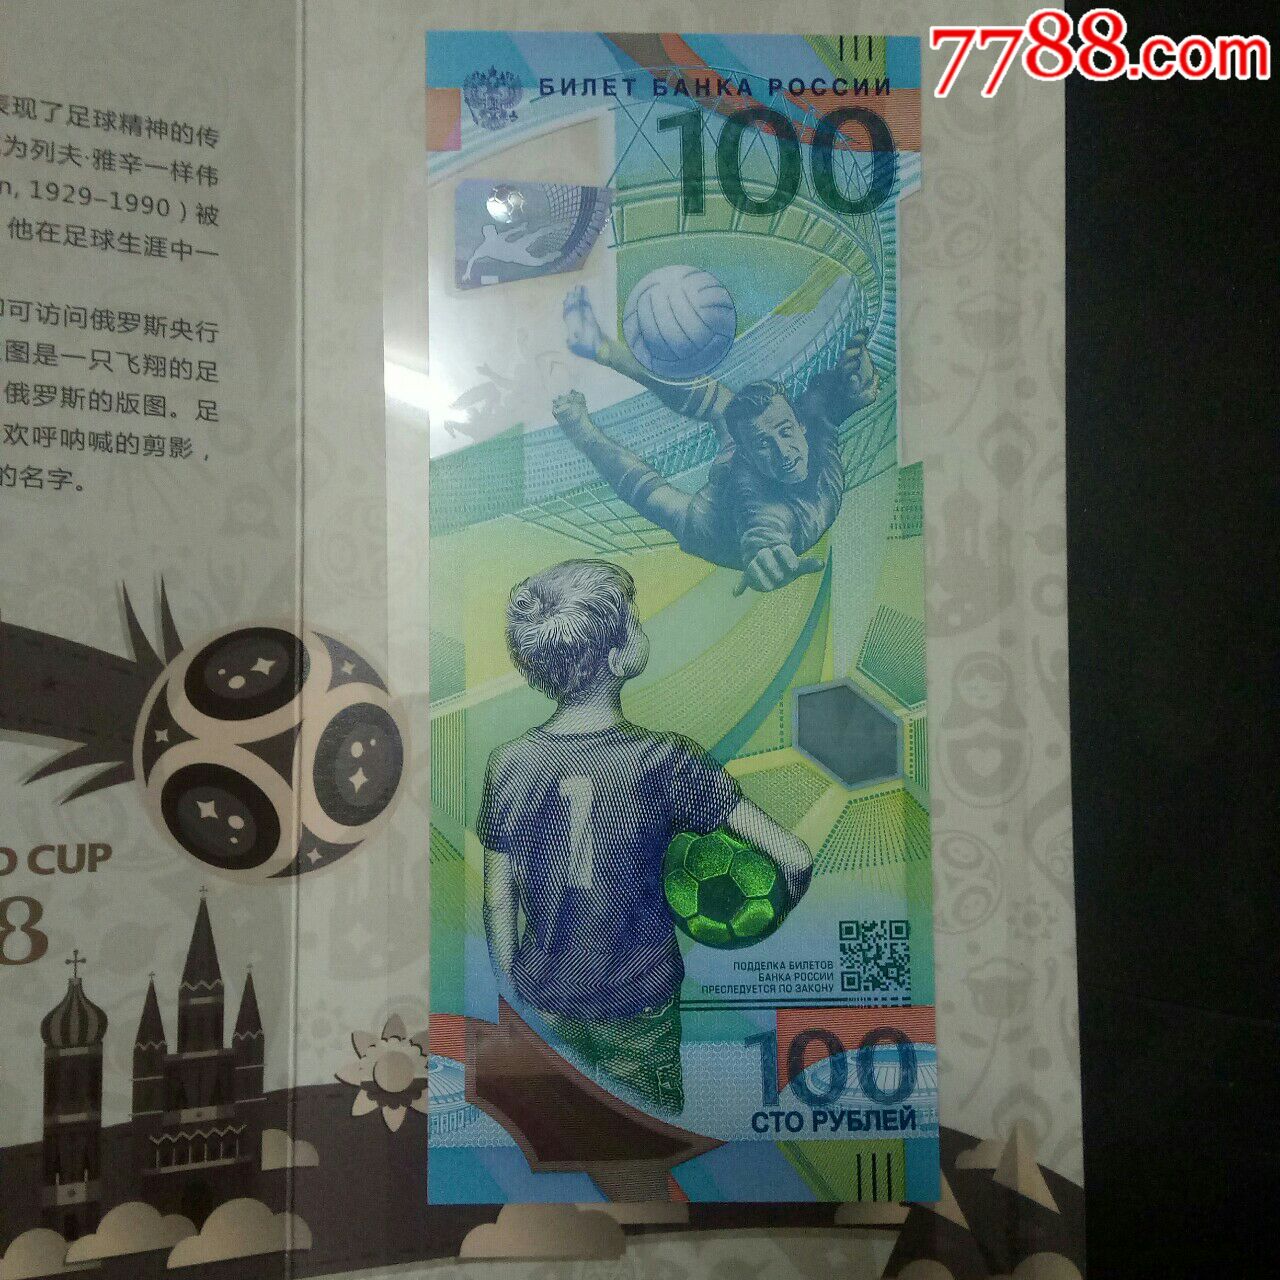 俄罗斯世界杯纪念钞五张齐拍